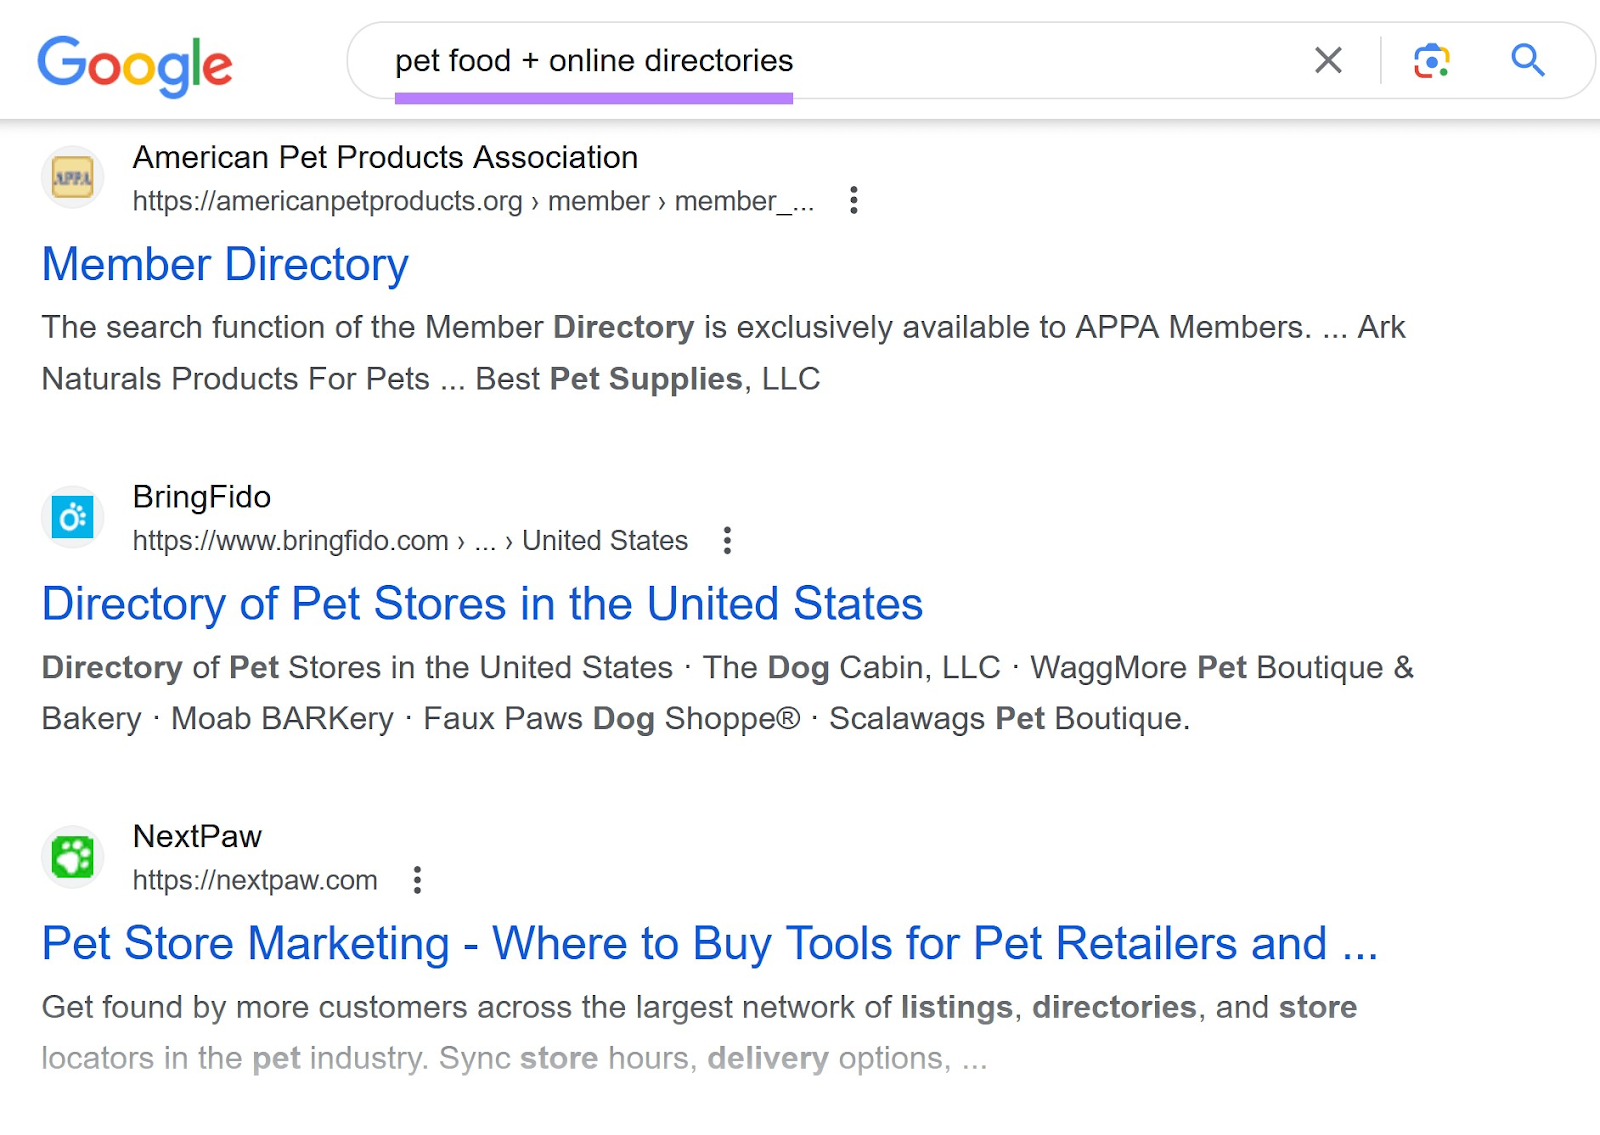 Google SERP for “pet food + online directories”